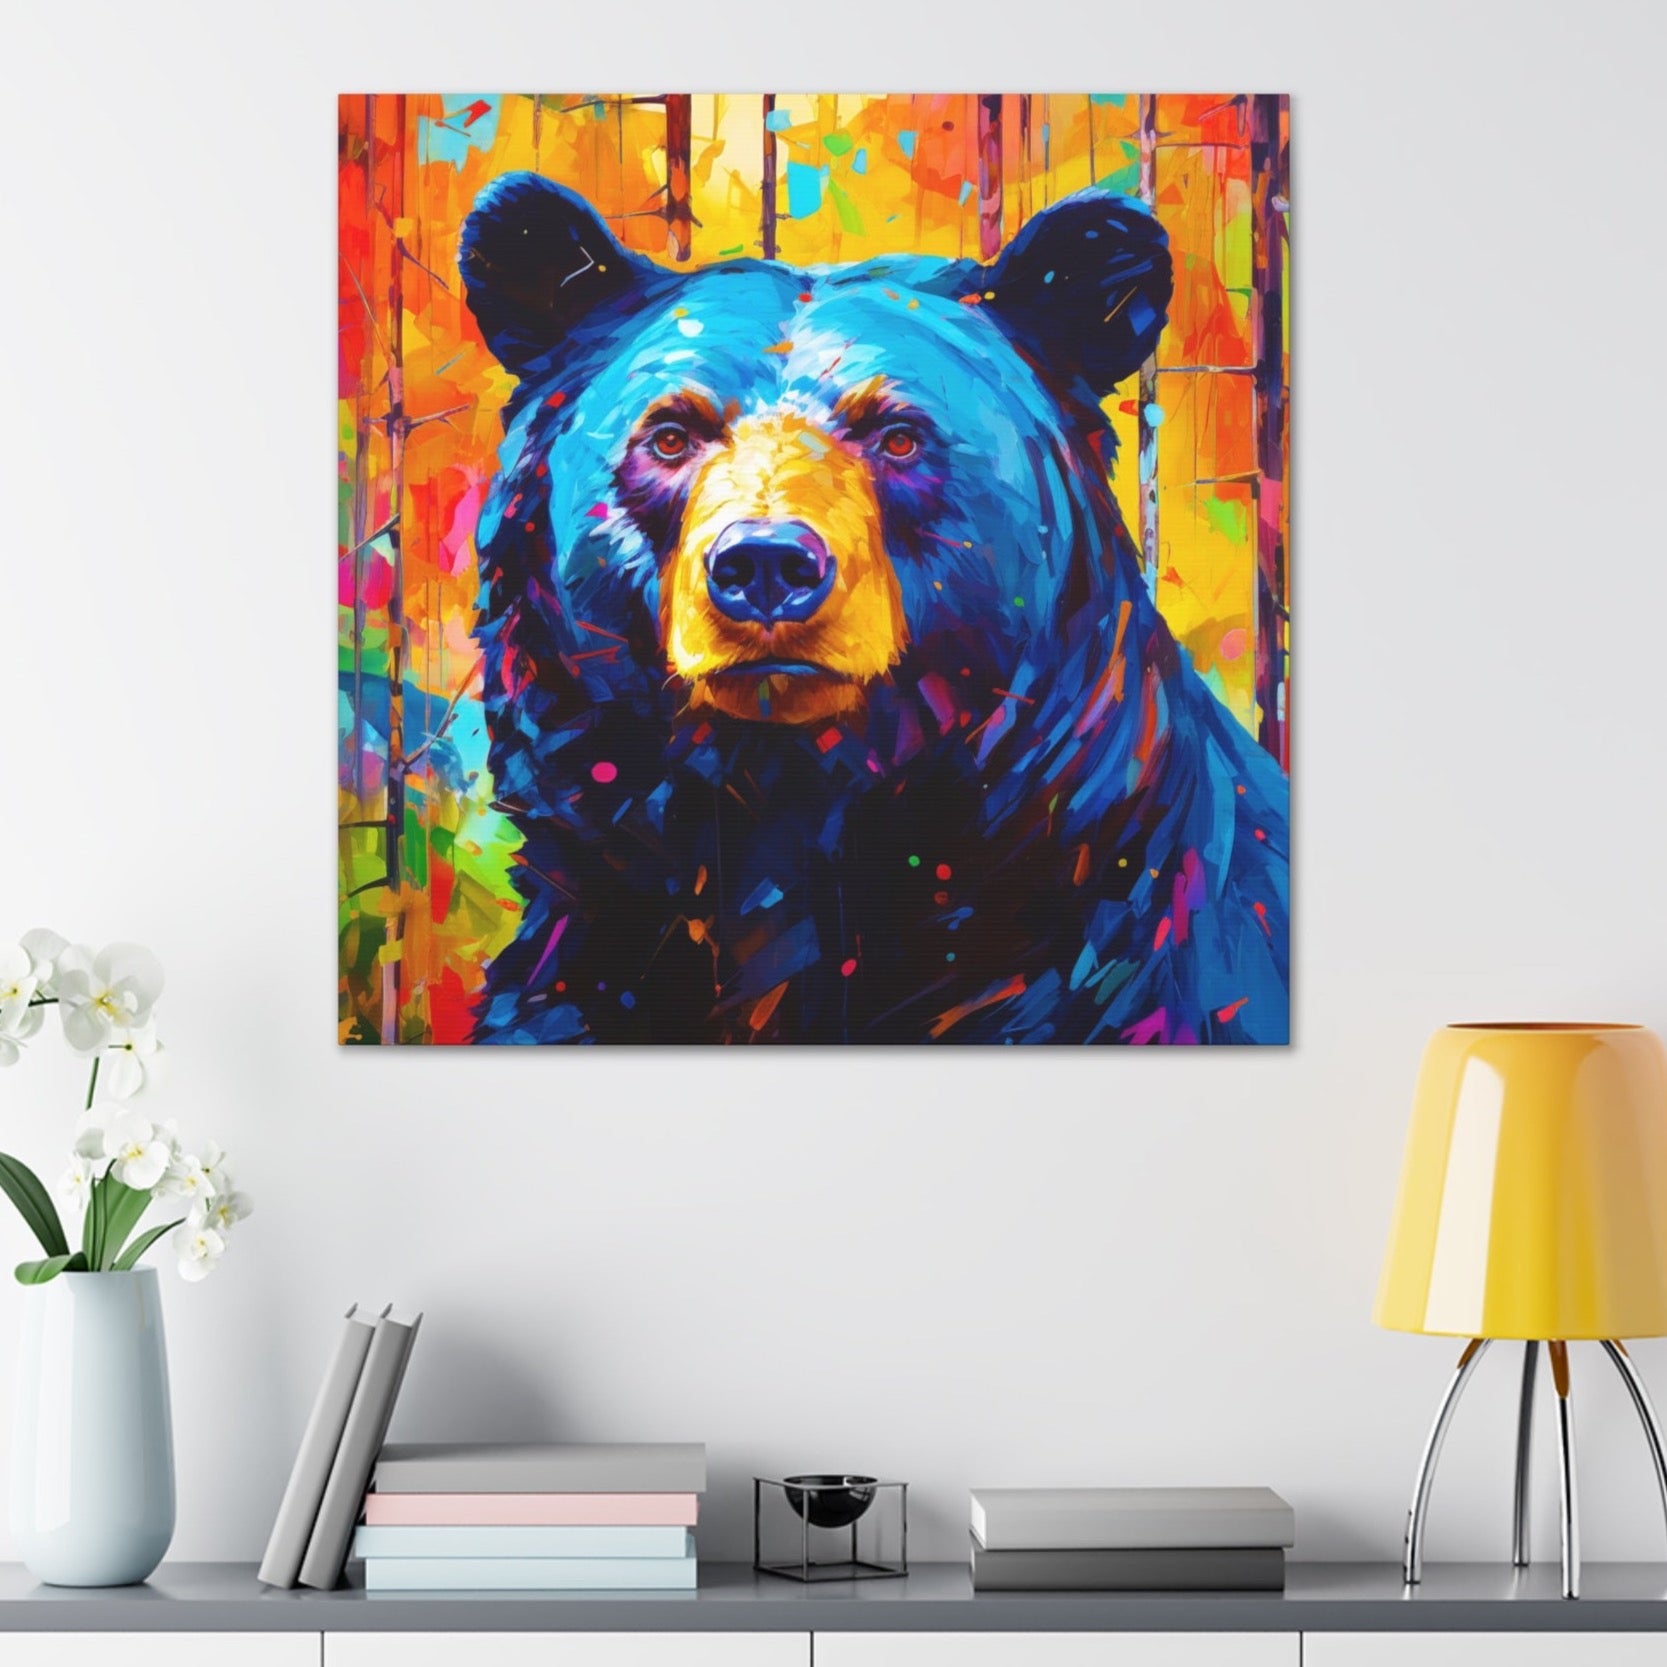 black bear wall decor, wall decor black bear